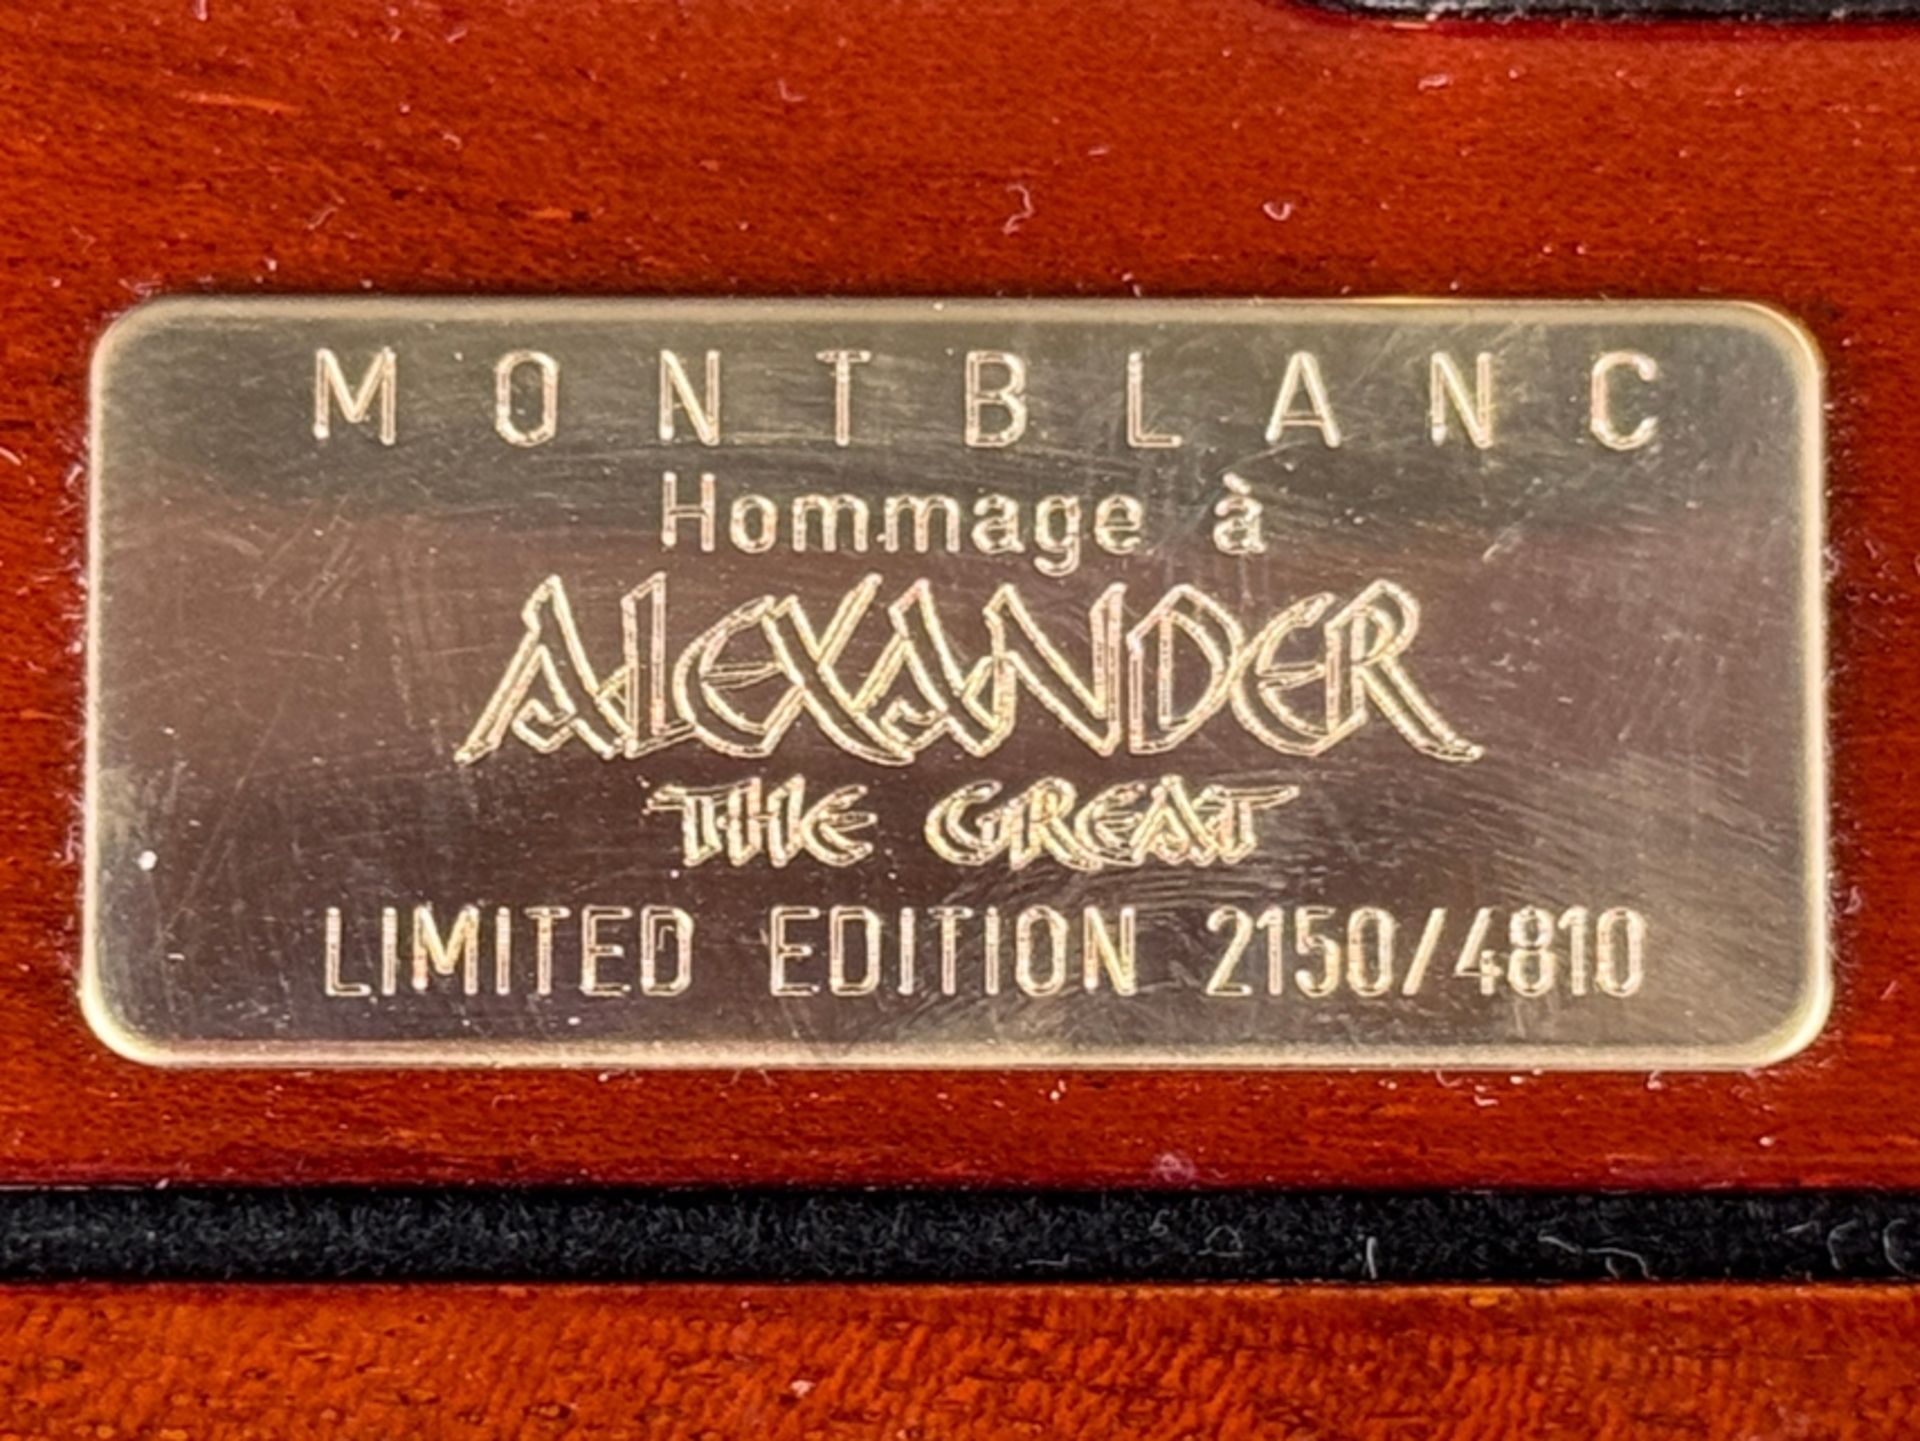 Montblanc Füllfederhalter "Alexander the Great", limitierte Edition 2150/4810, Kolbenfüllfederhalte - Bild 4 aus 4